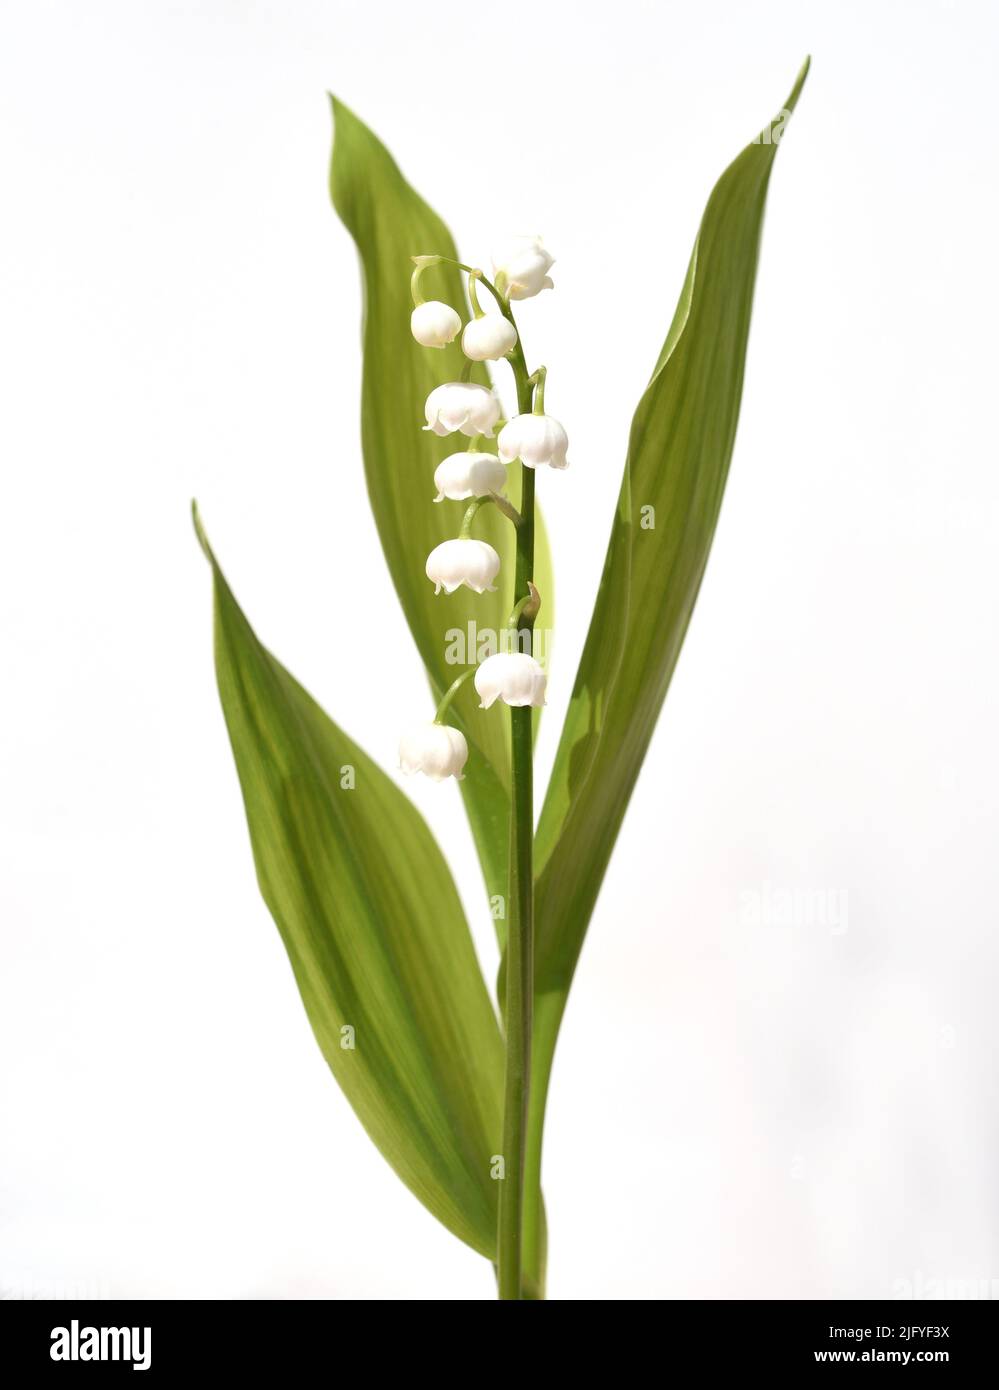 Maigloeckchen, Convallaria majalis hat weisse, Blueten. Sie ist eine Duft- und Giftpflanze und eine wichtige Heilpflanze, Lily-of-the-valley, Convalla Foto de stock